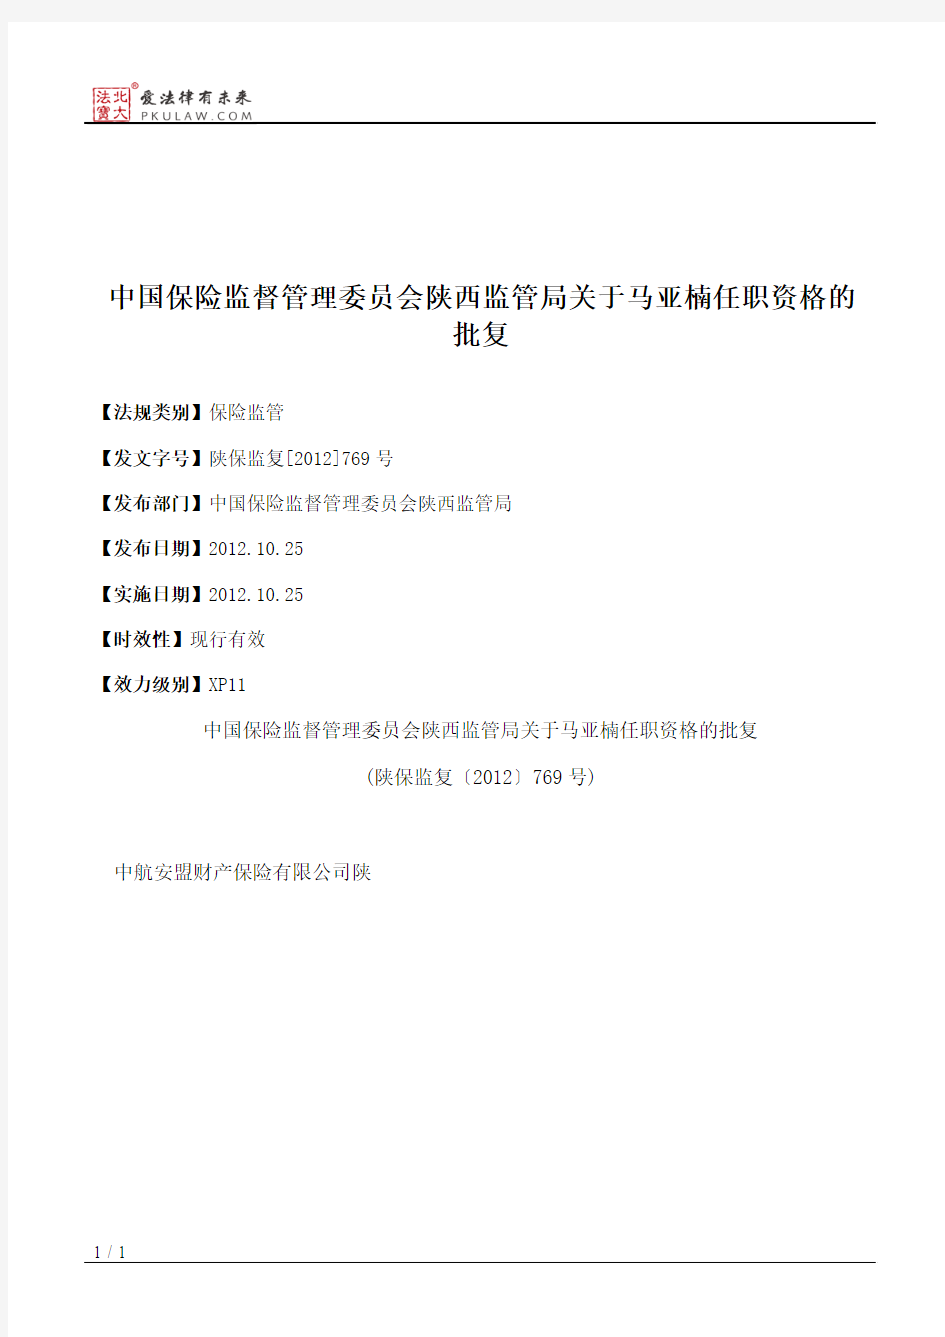 中国保险监督管理委员会陕西监管局关于马亚楠任职资格的批复